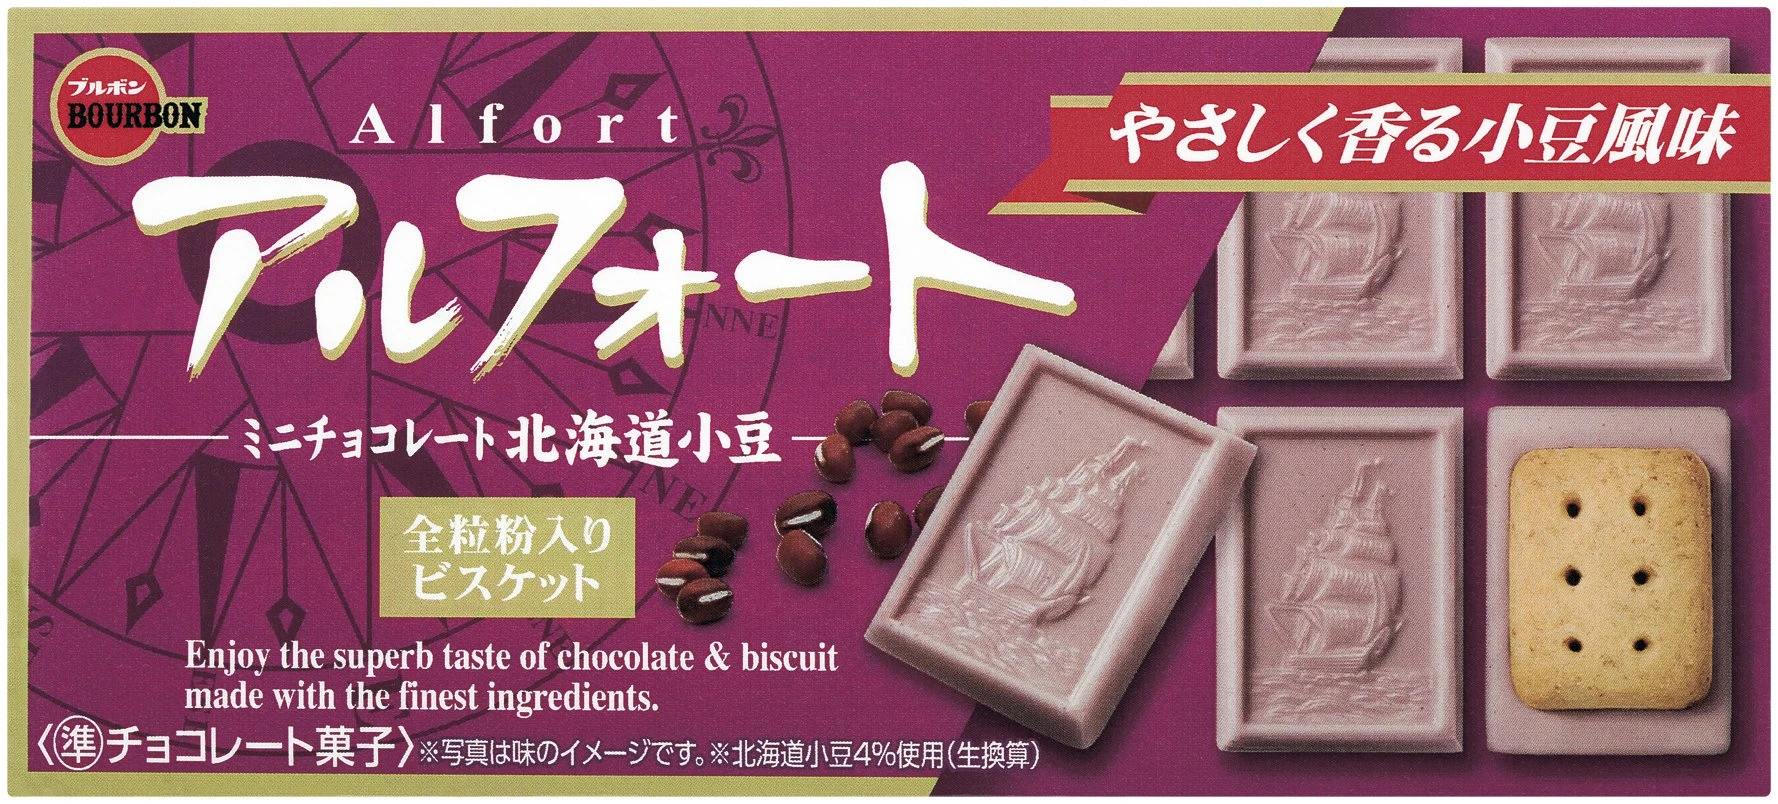 アルフォートミニチョコレート北海道小豆